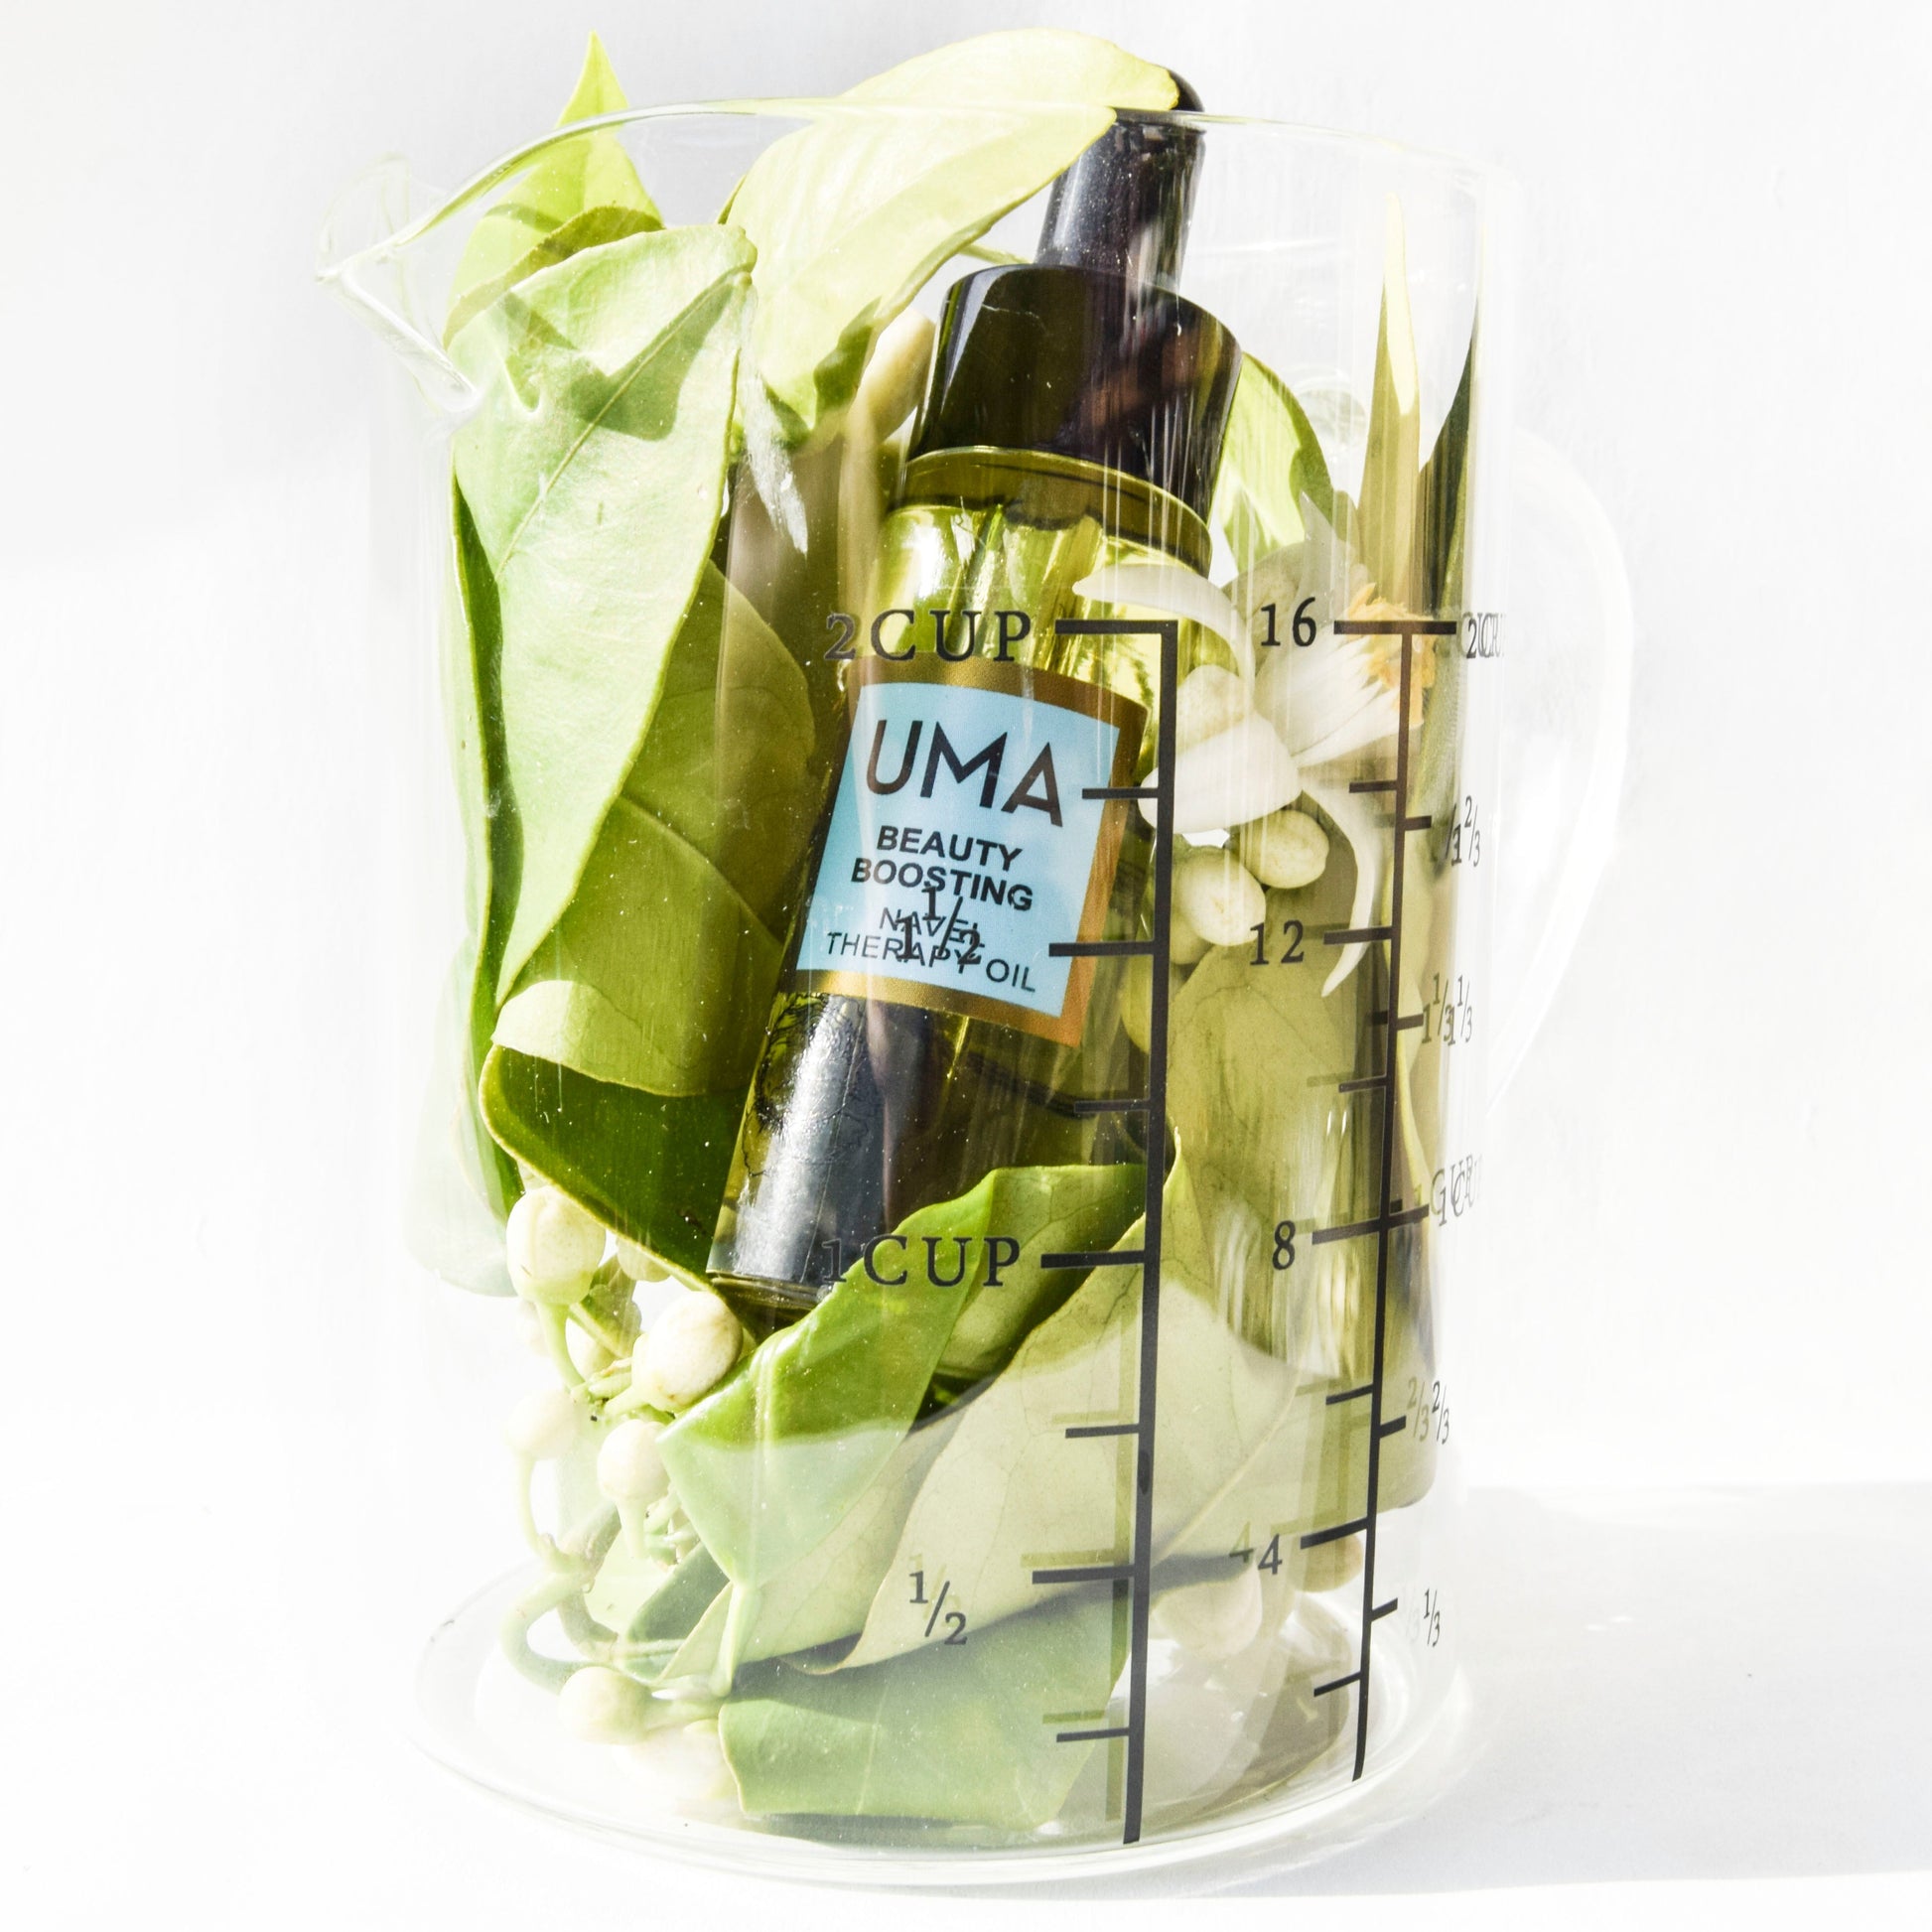 UMA Beauty Boosting Body Balancing Navel Oil Duo - Uma Oils